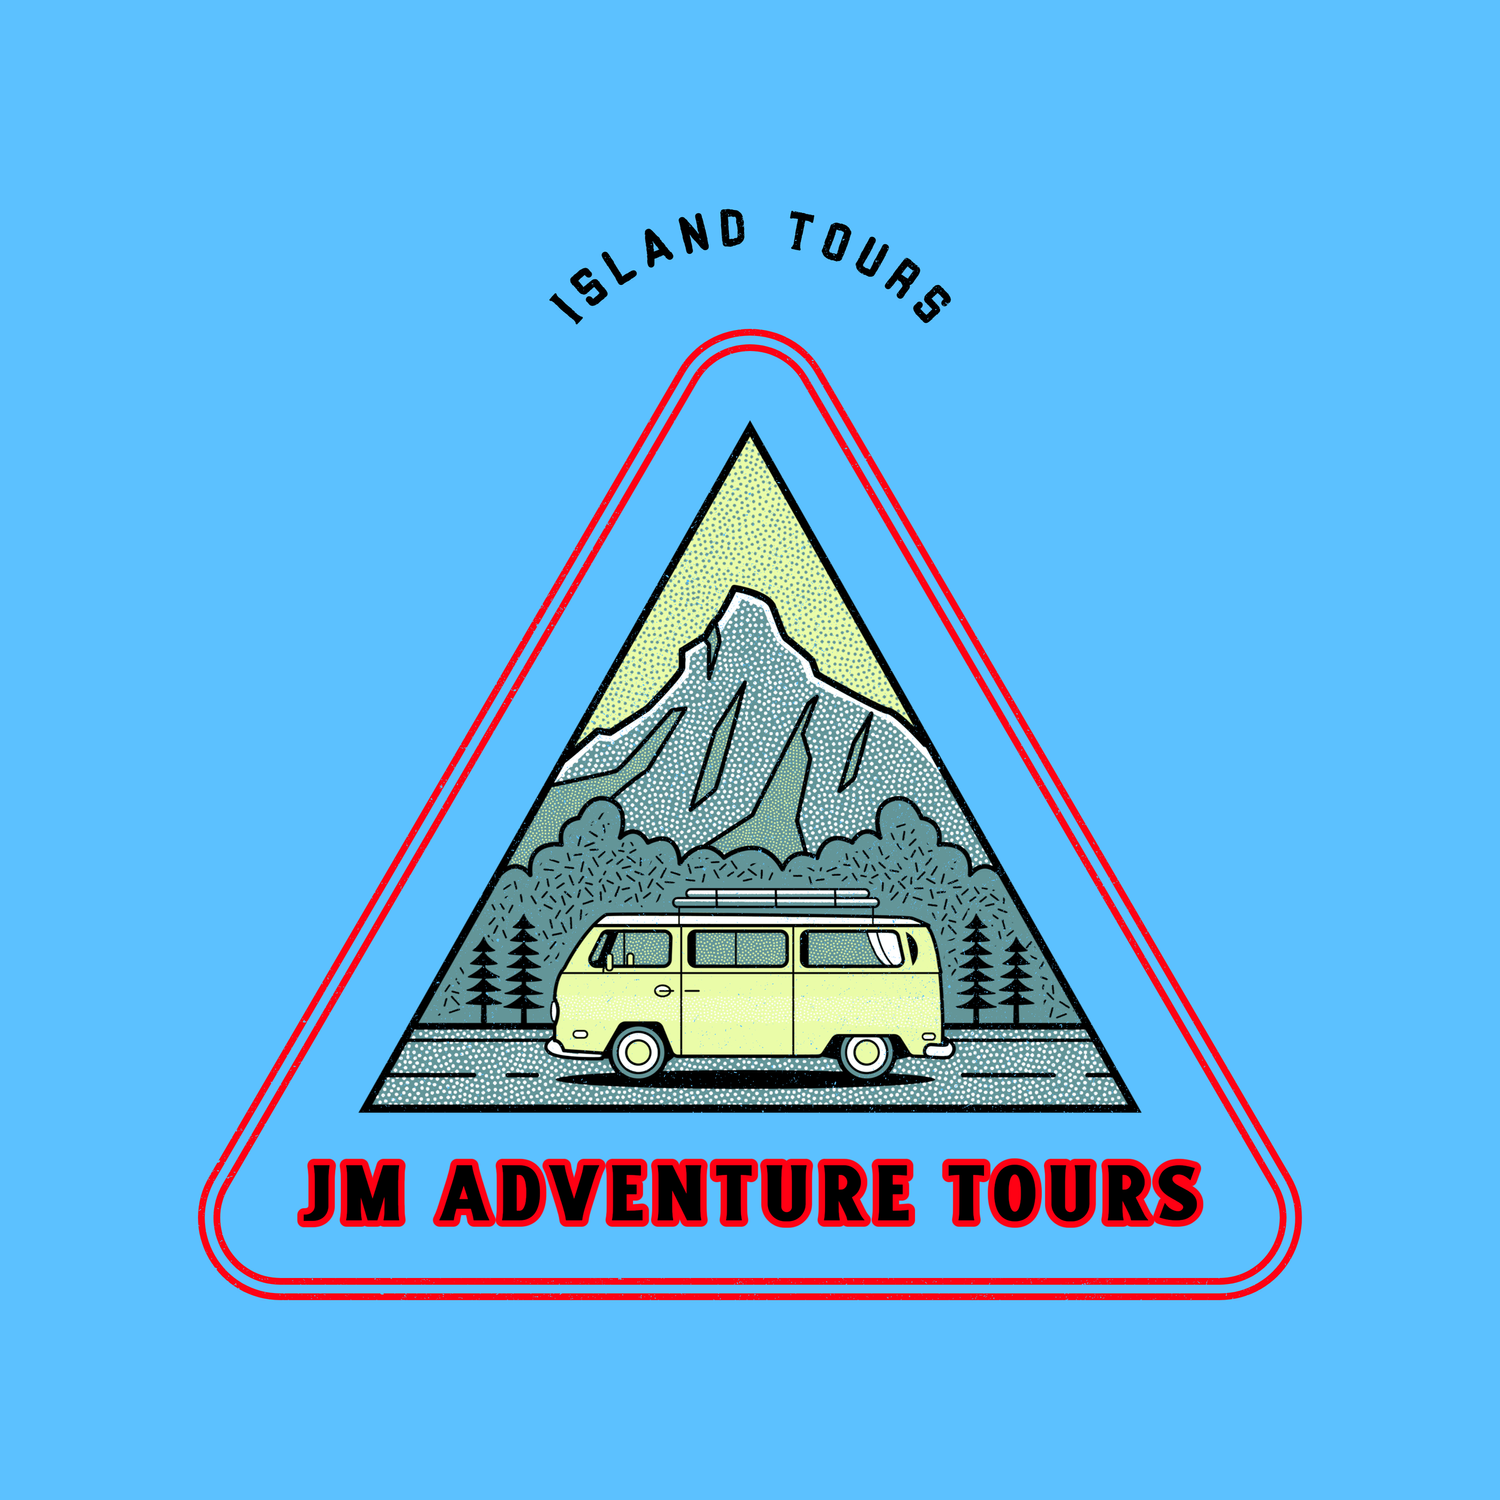 JM ADVENTURE TOURS